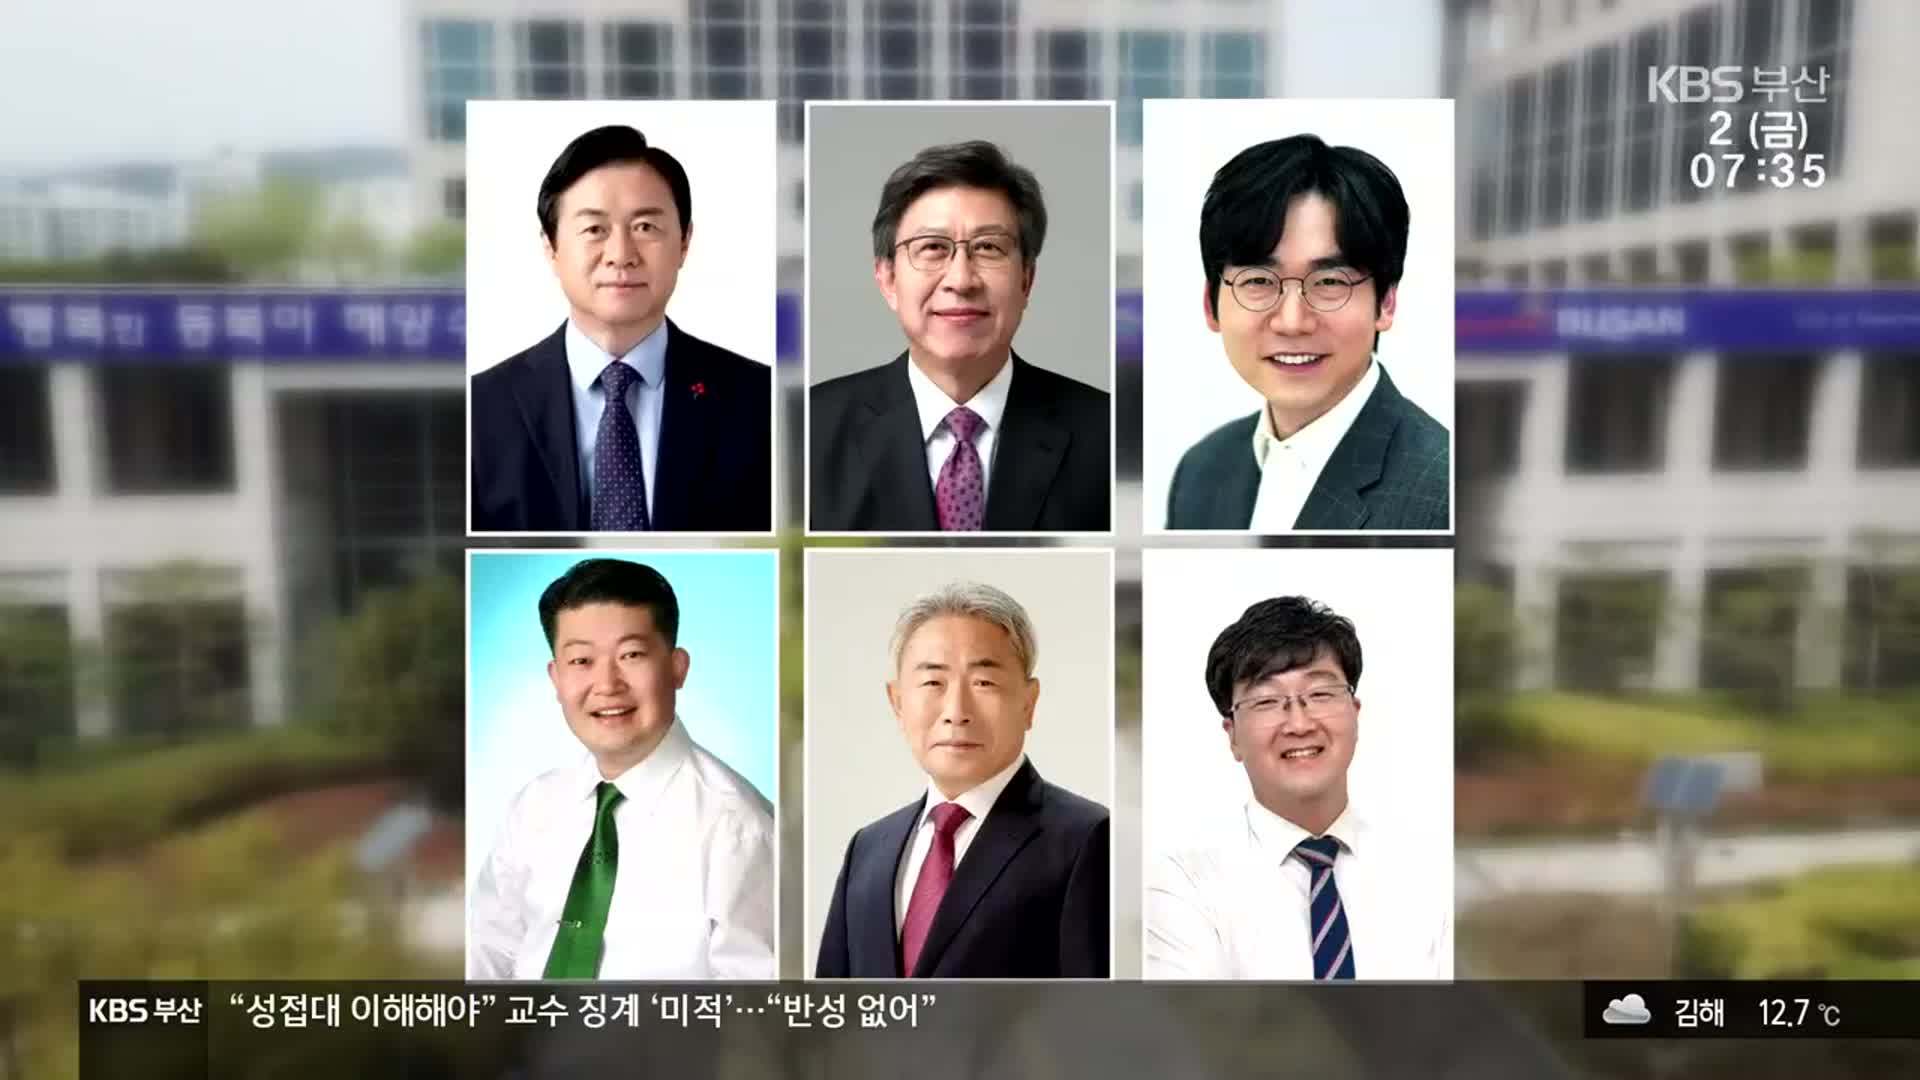 [부산 여론조사] 김영춘 26.7% vs 박형준 46.8%…격차 벌어져